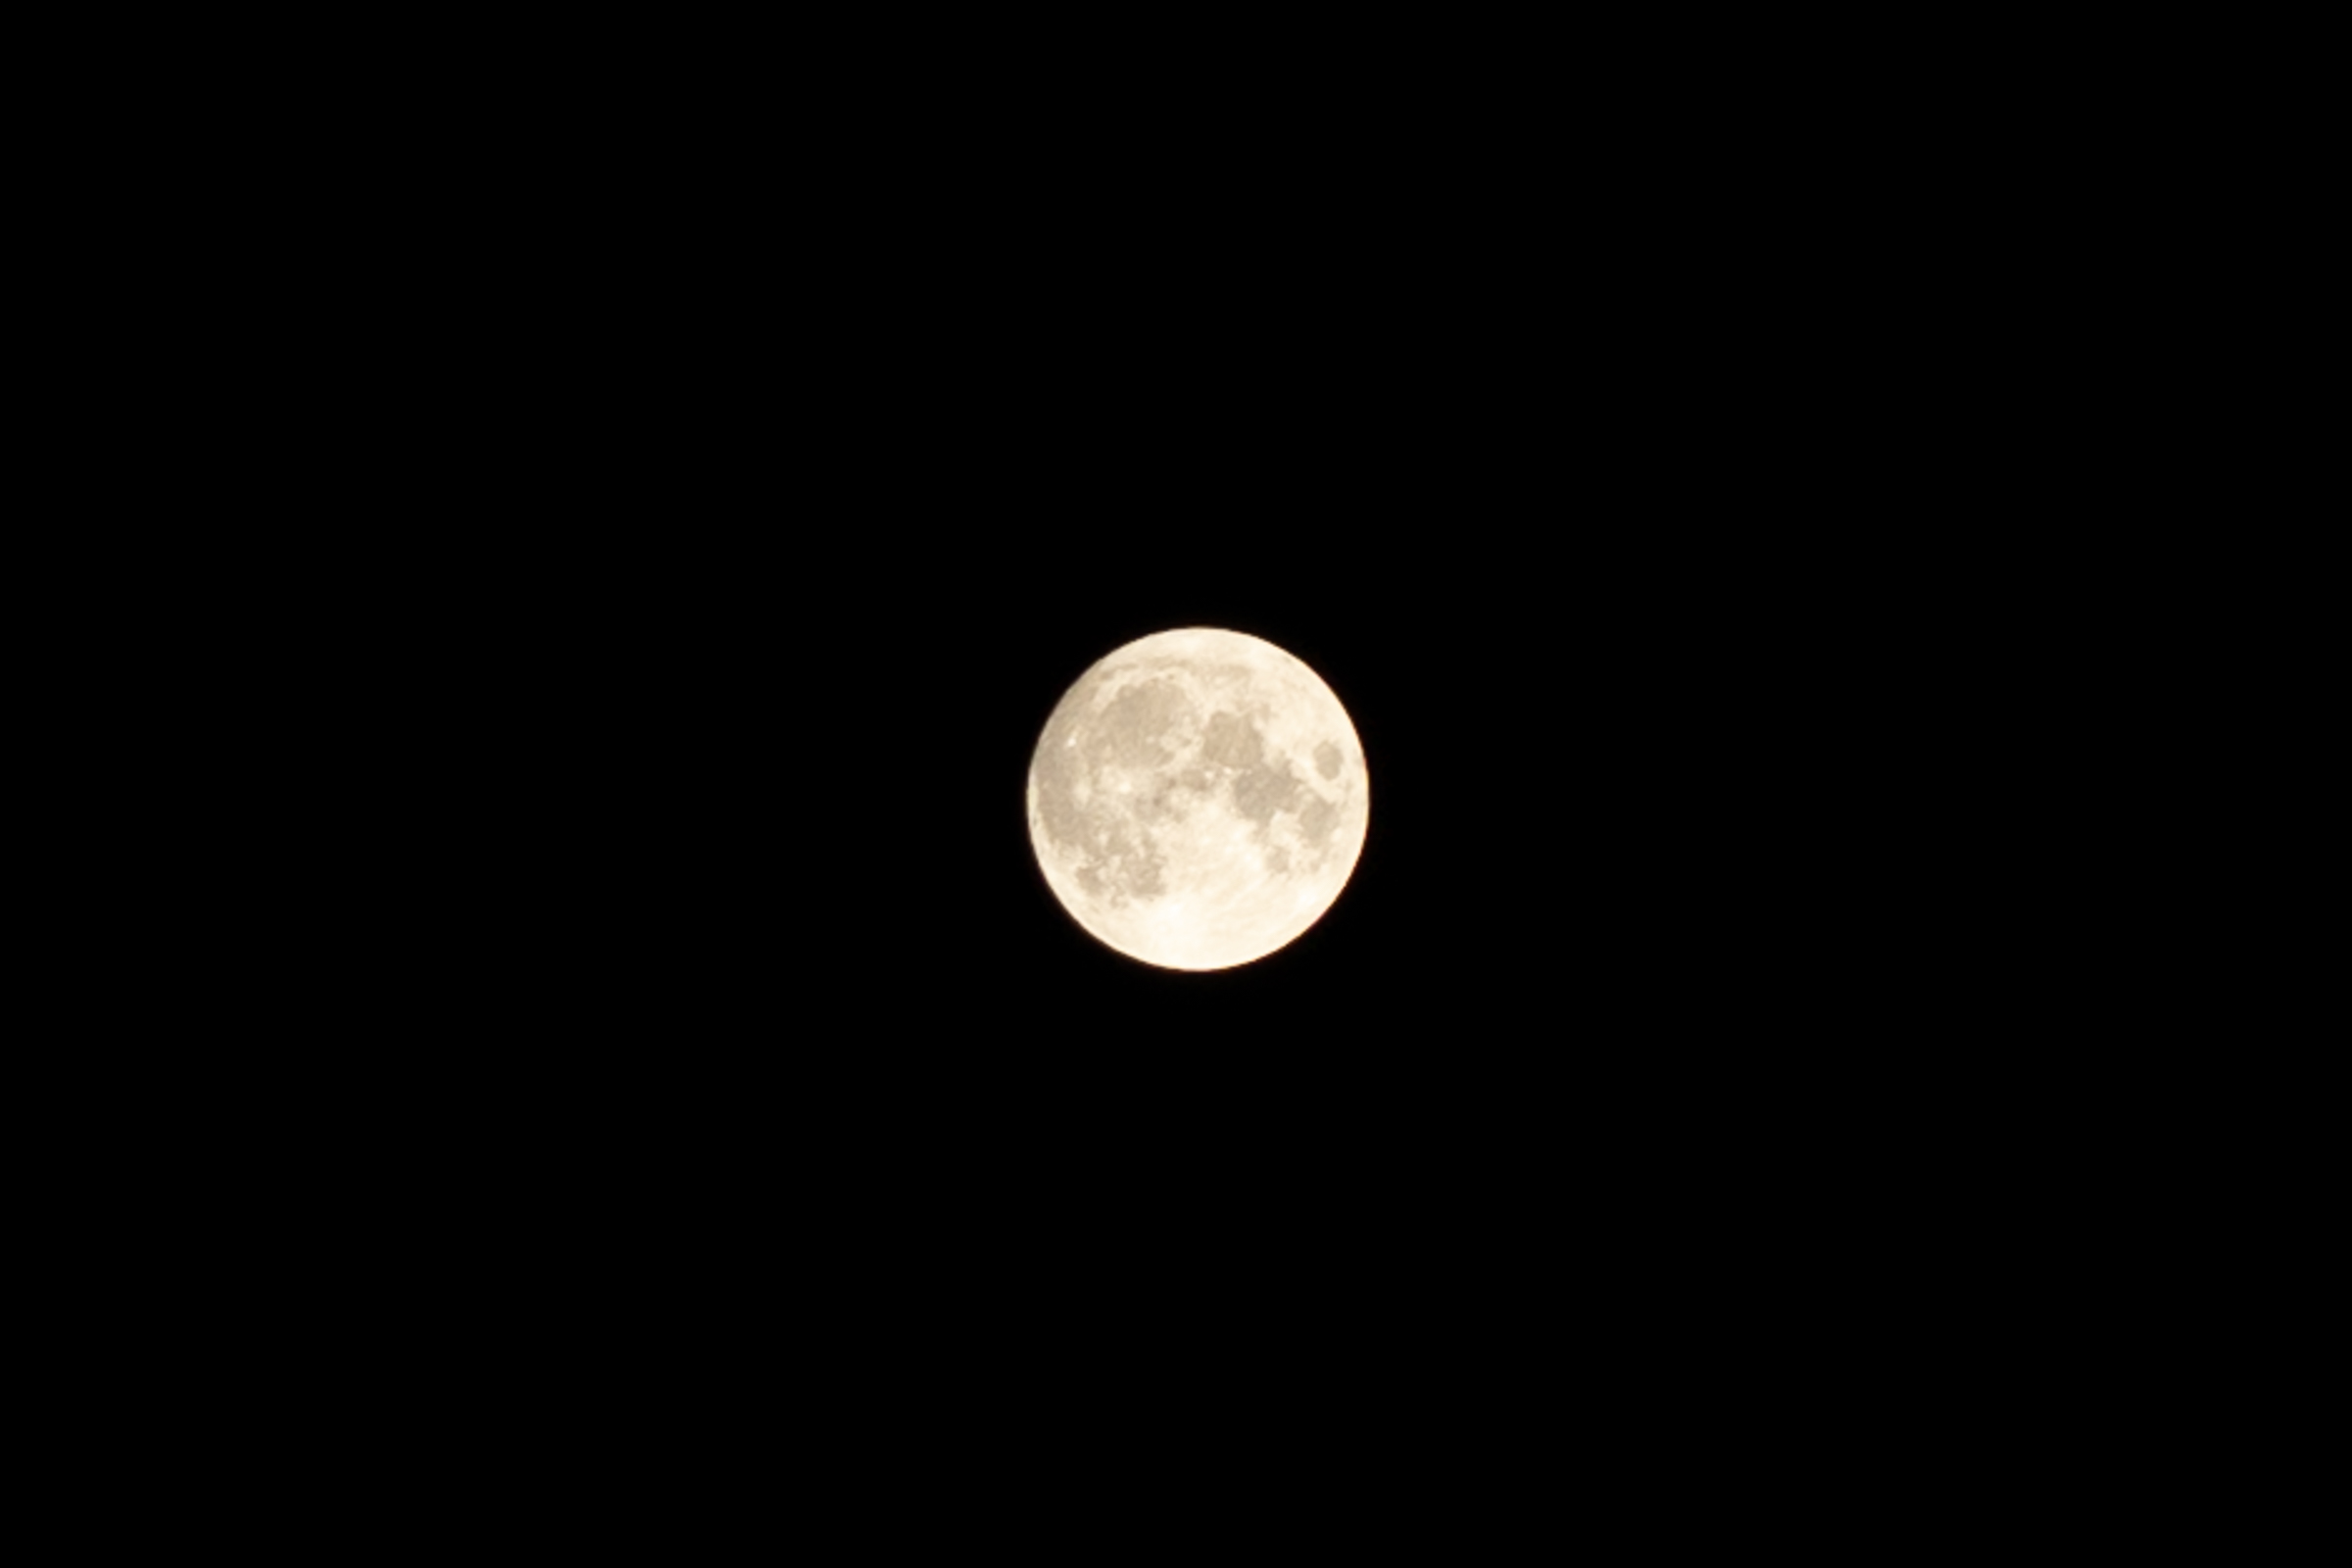 満月 今夜は10月の満月 ハンターズムーン 全国的に見えそうな地域多めか ハンターズムーンの知られざる特殊性 ロケットニュース24